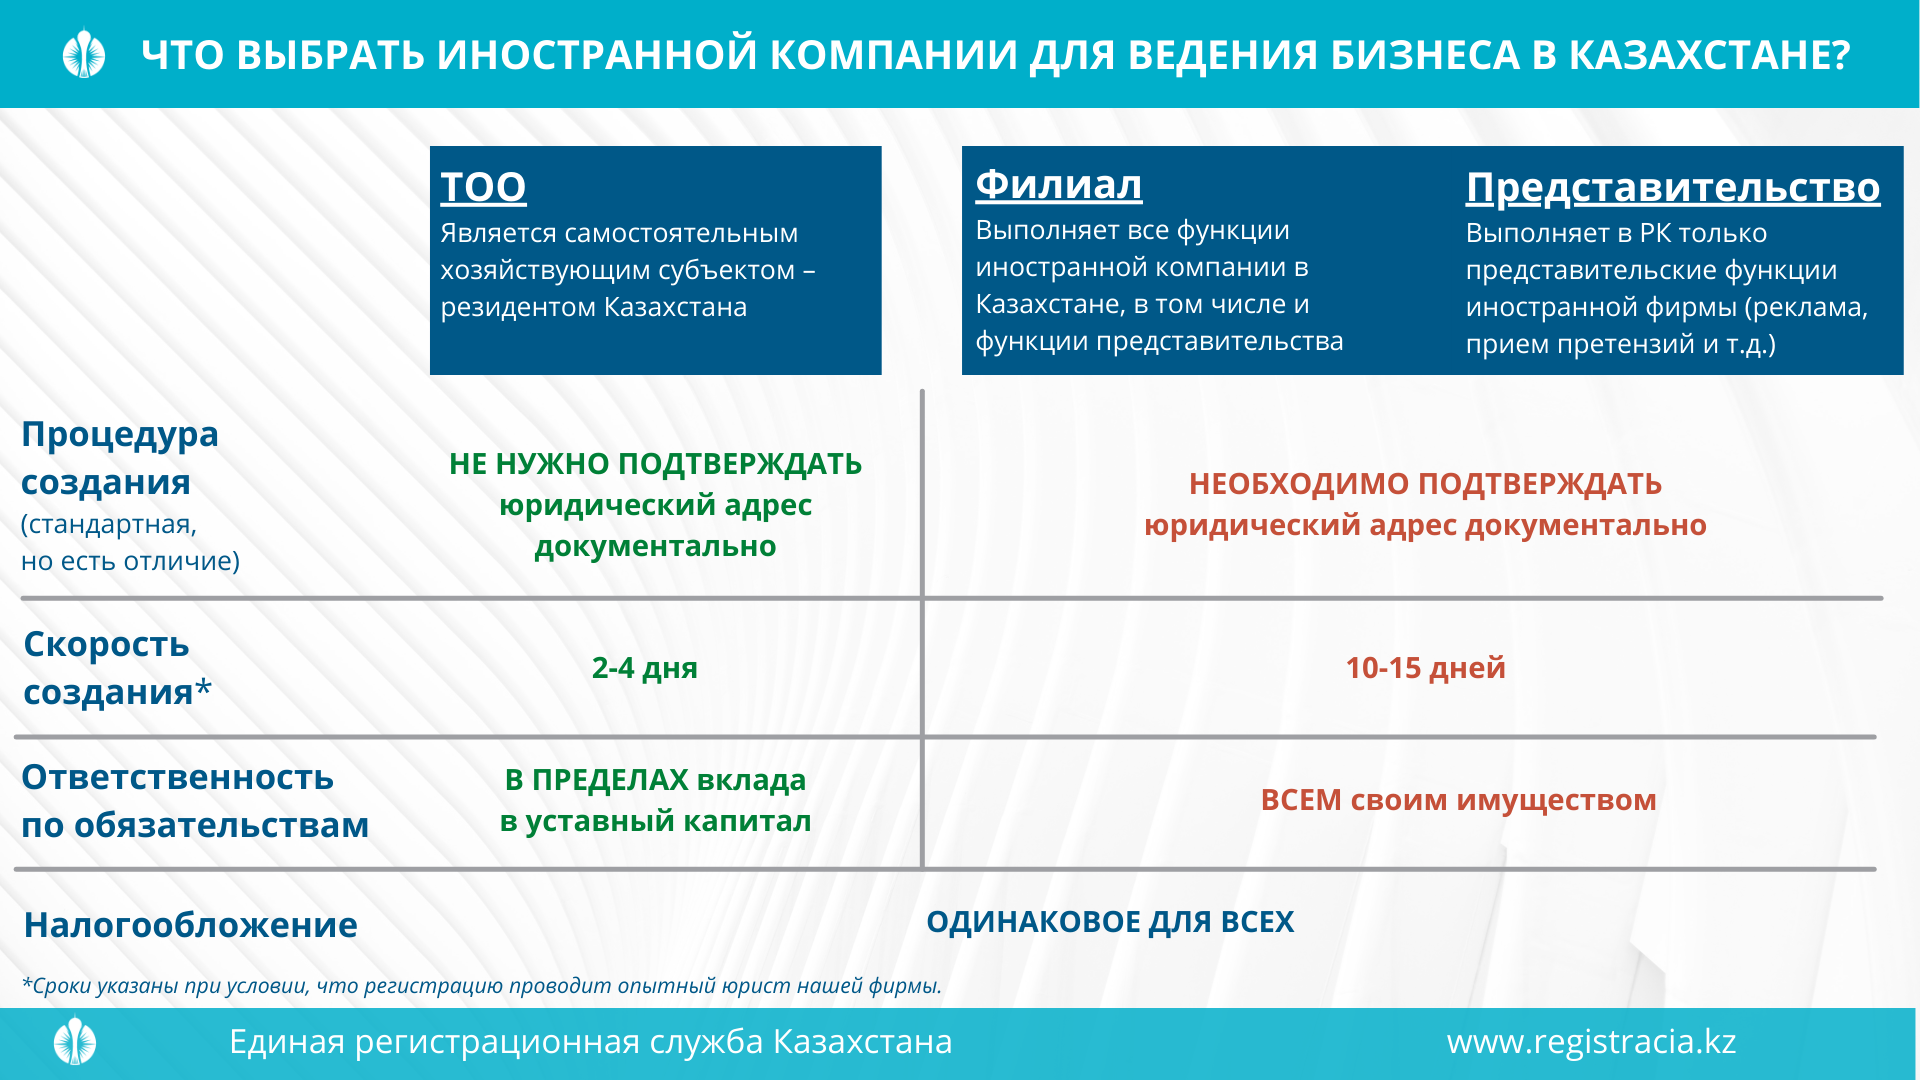 Отличия ТОО от филиала и представительства в Казахстане